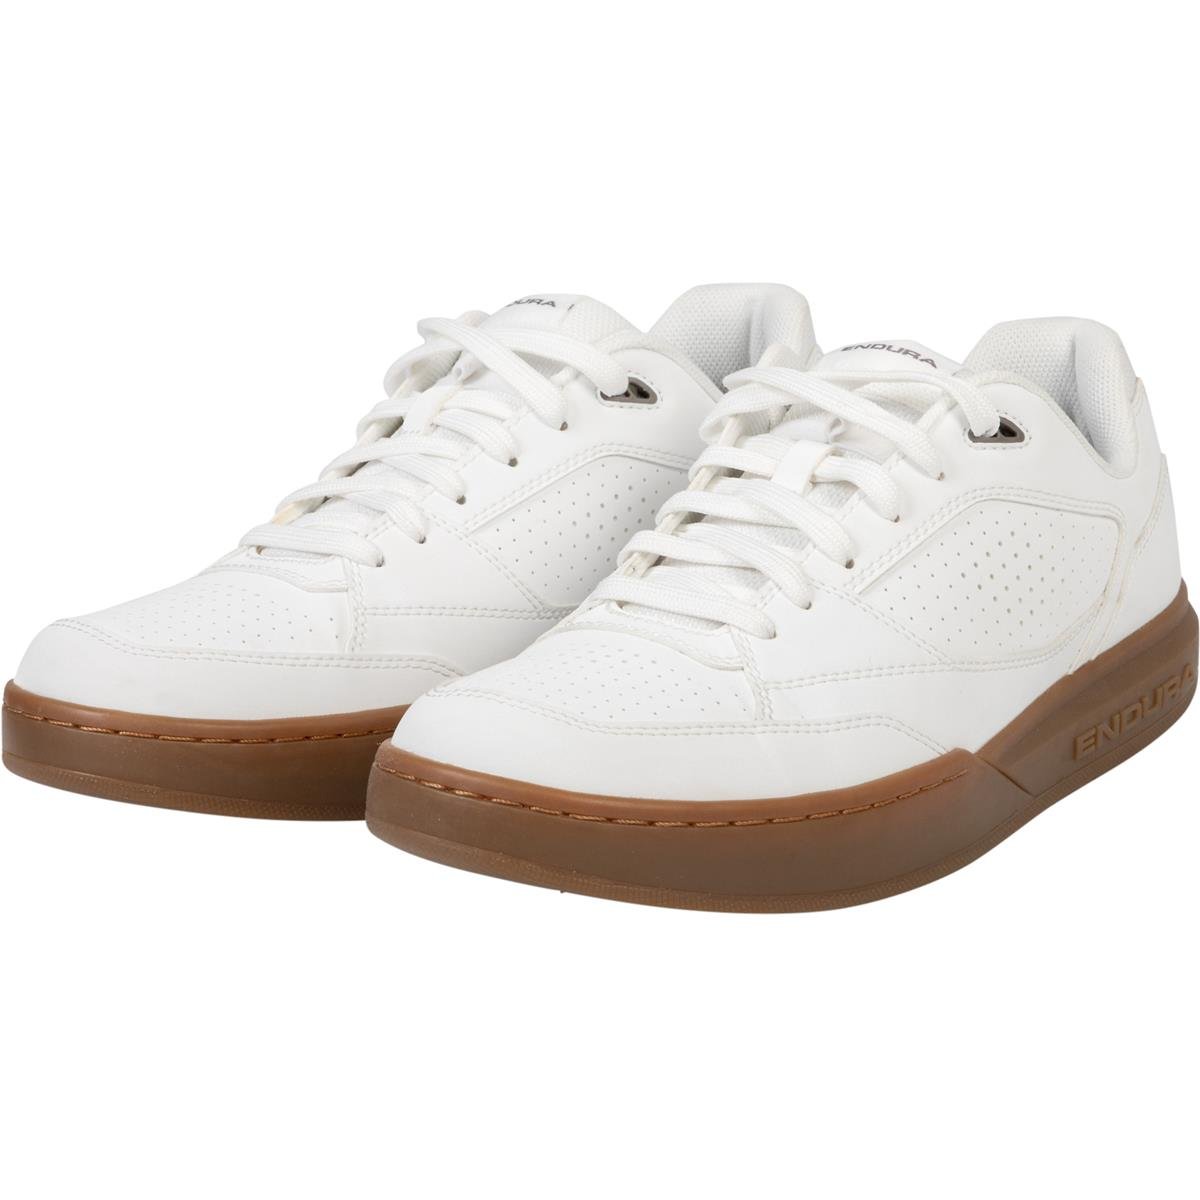 Endura MTB Shoes Hummvee Flat White